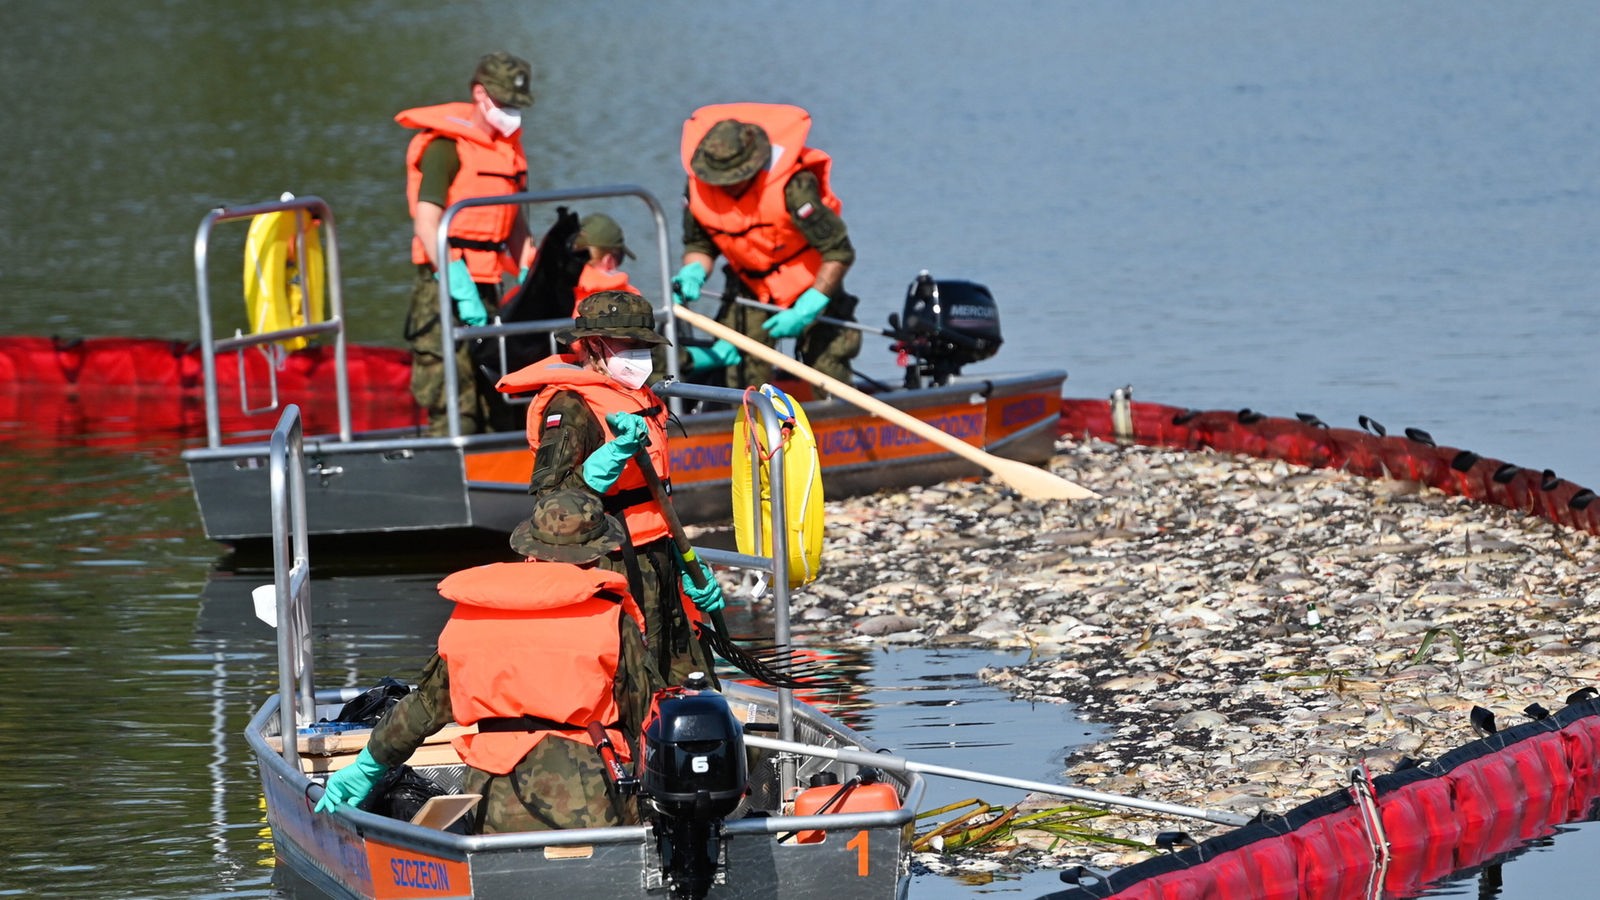 Po śmierci ryb w Odrze: Jak kontrolowana jest woda w NRW?  – Aktualności